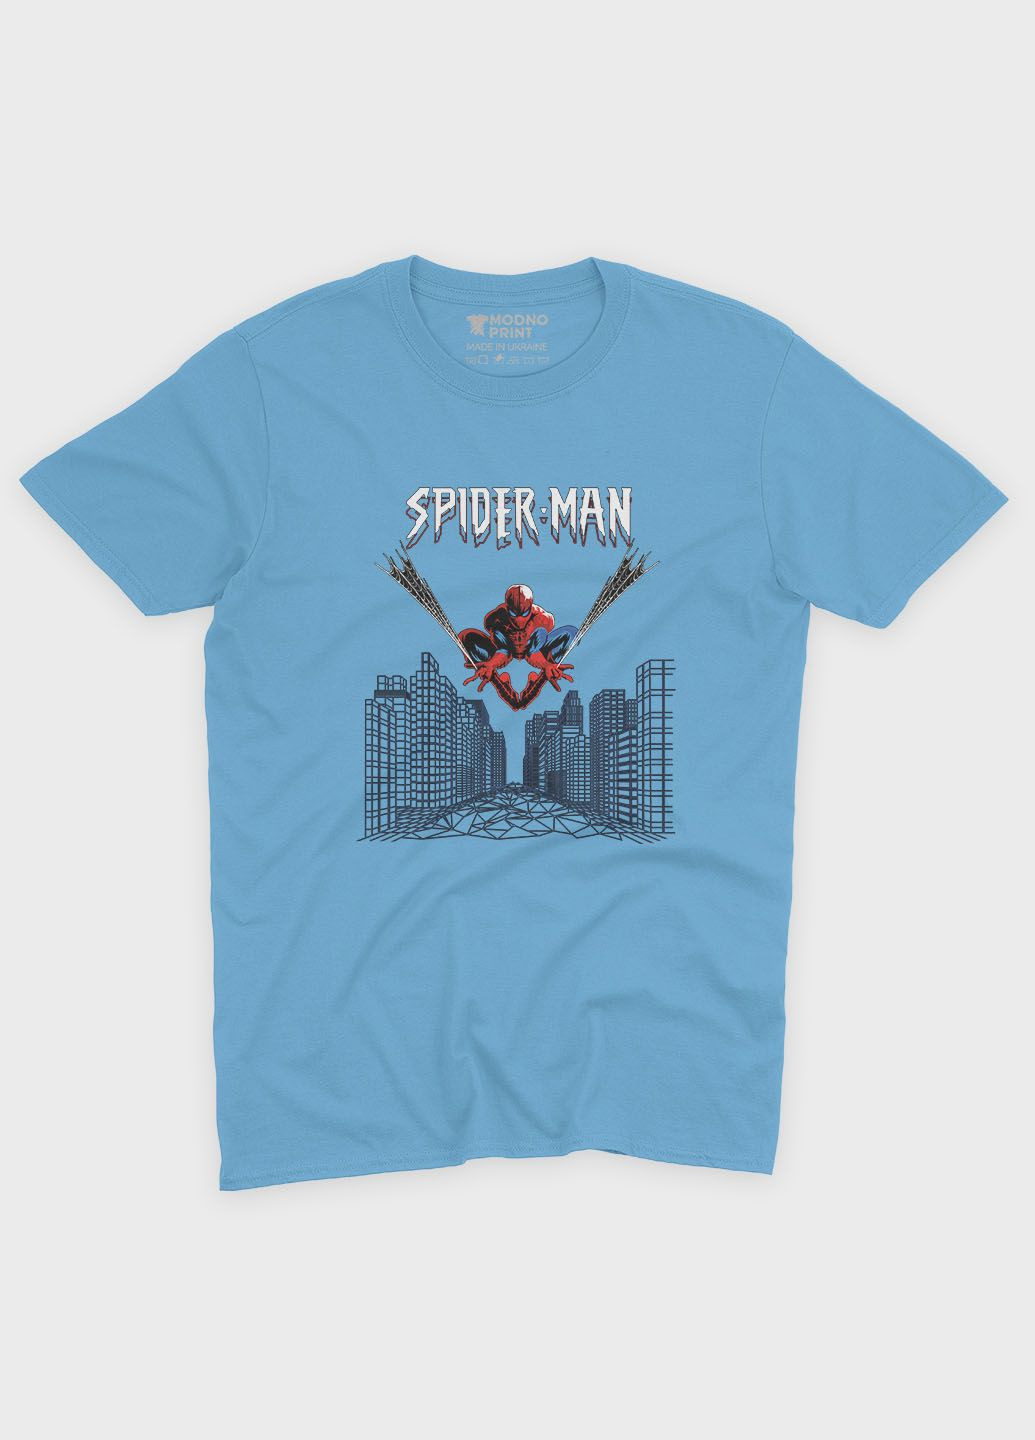 Голубая демисезонная футболка для мальчика с принтом супергероя - человек-паук (ts001-1-lbl-006-014-038-b) Modno